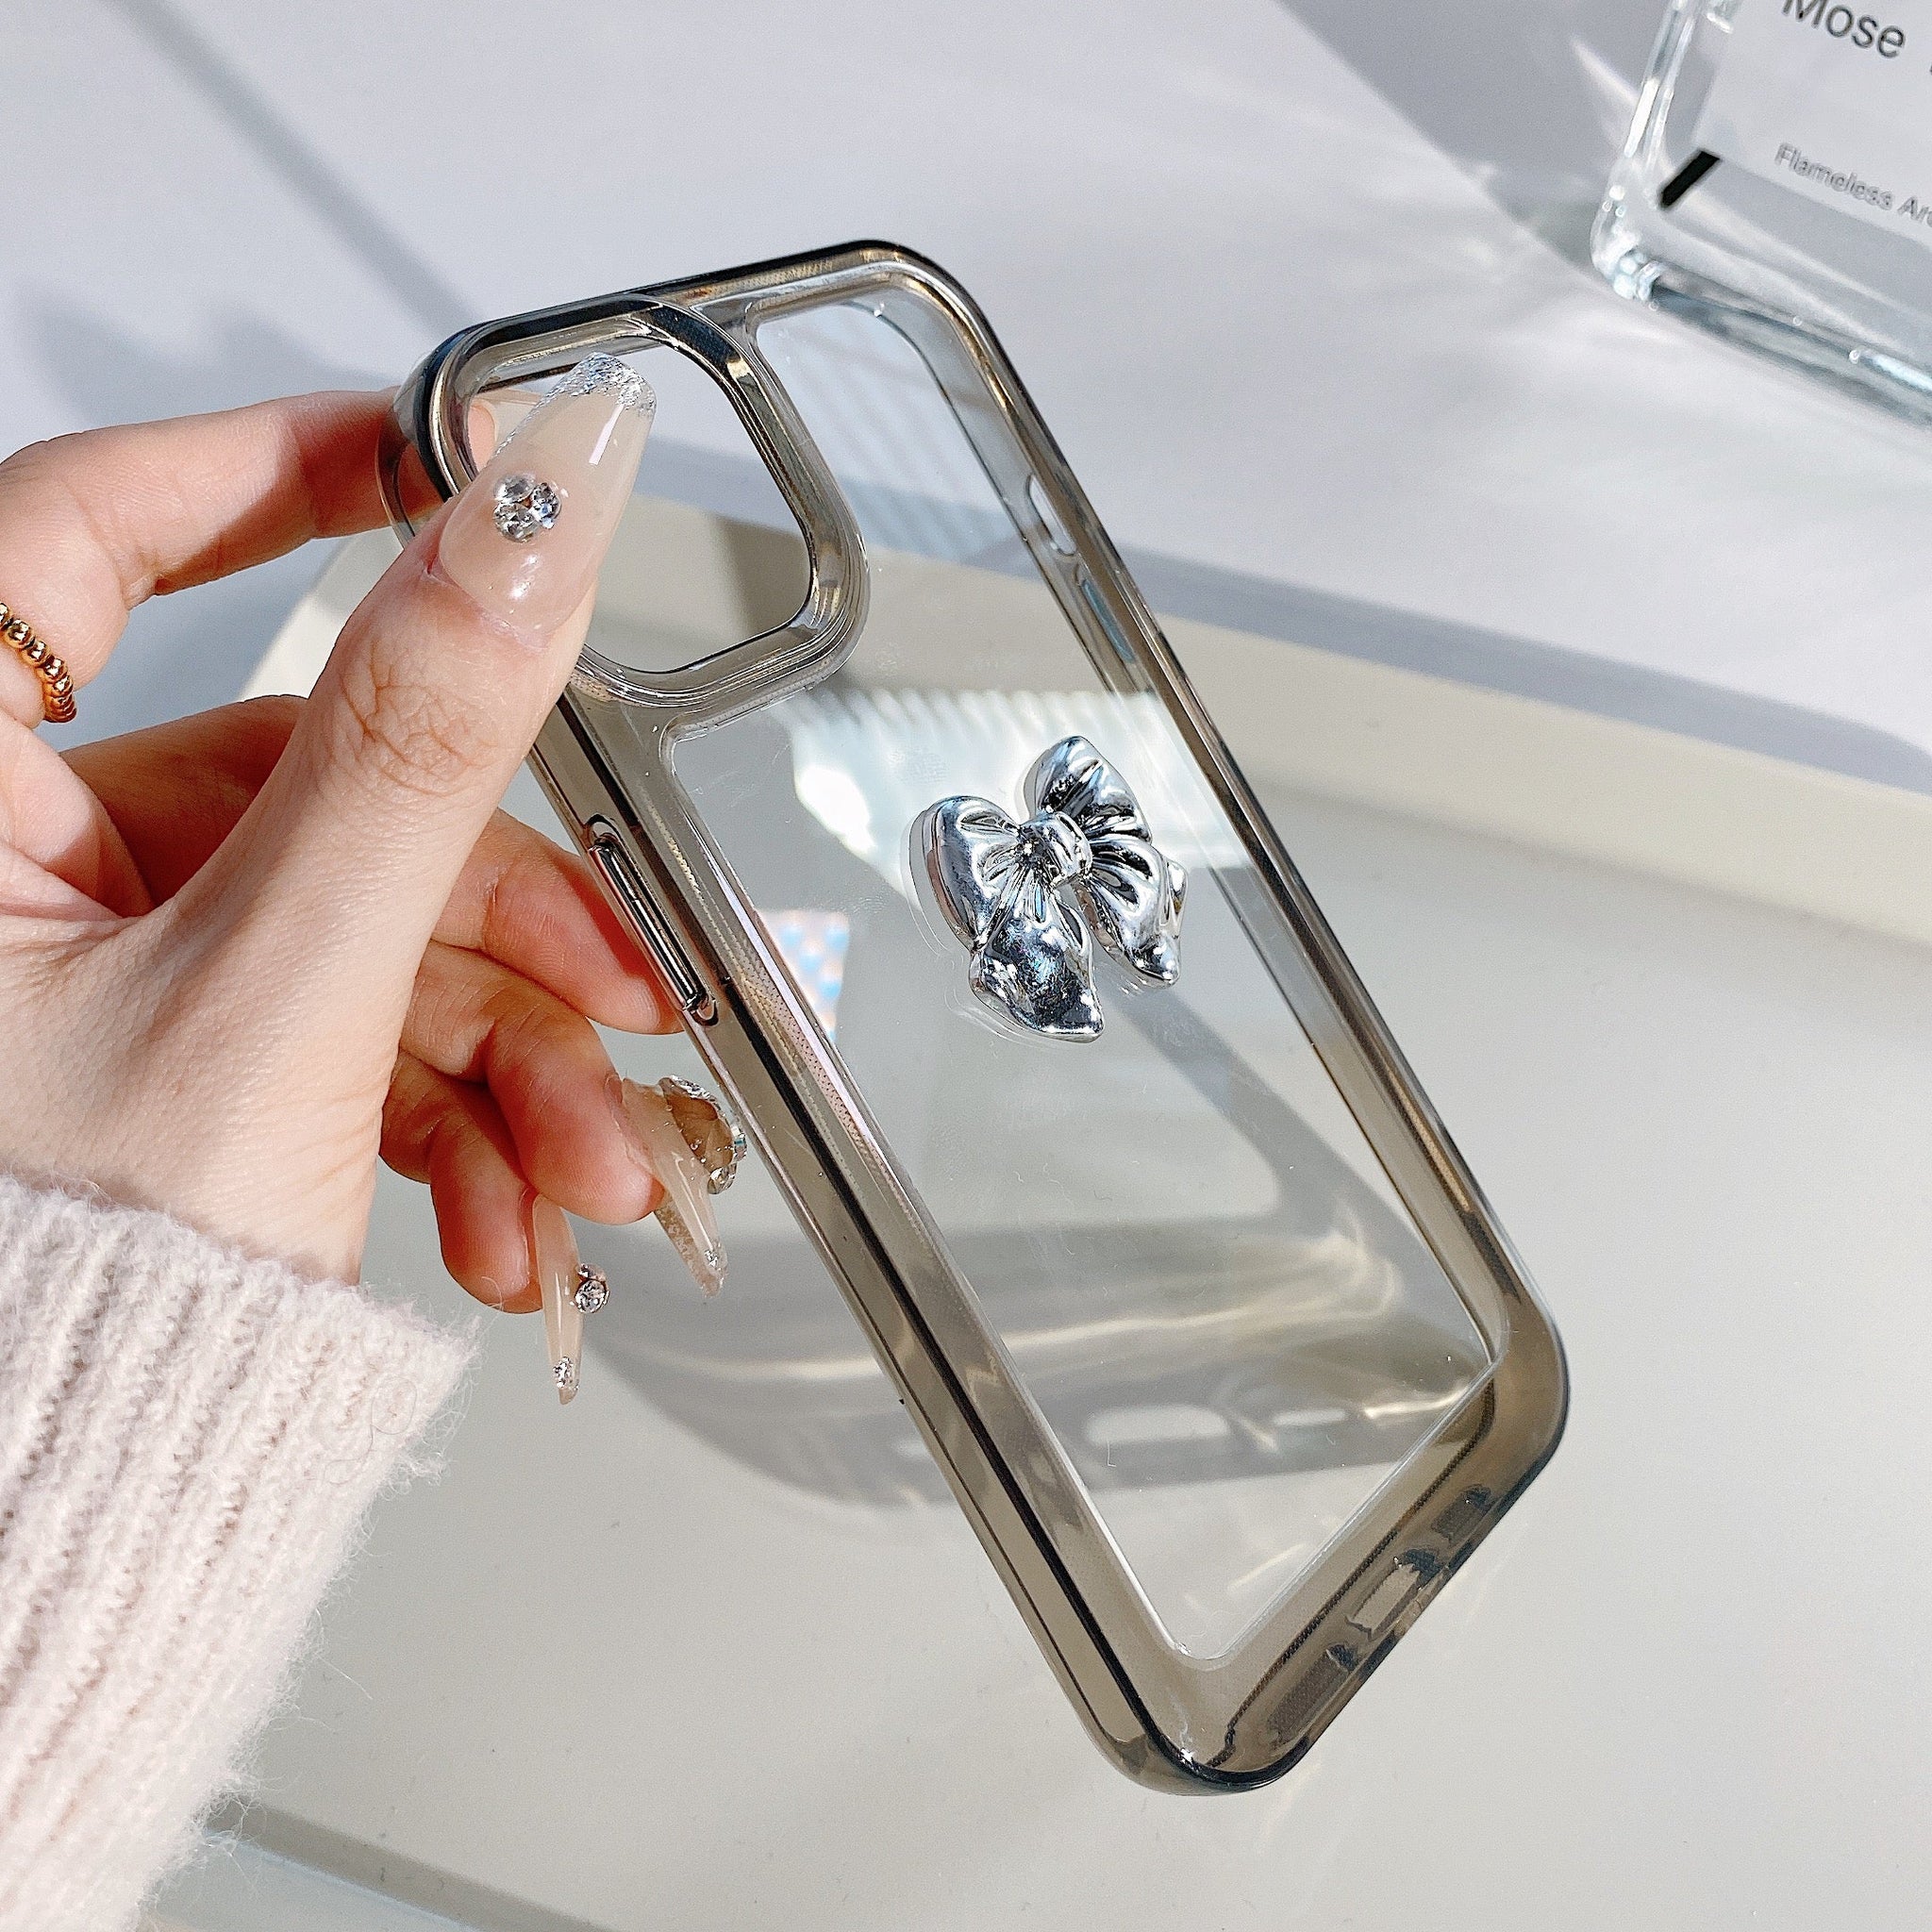 3D Bow Transparent iPhone Case